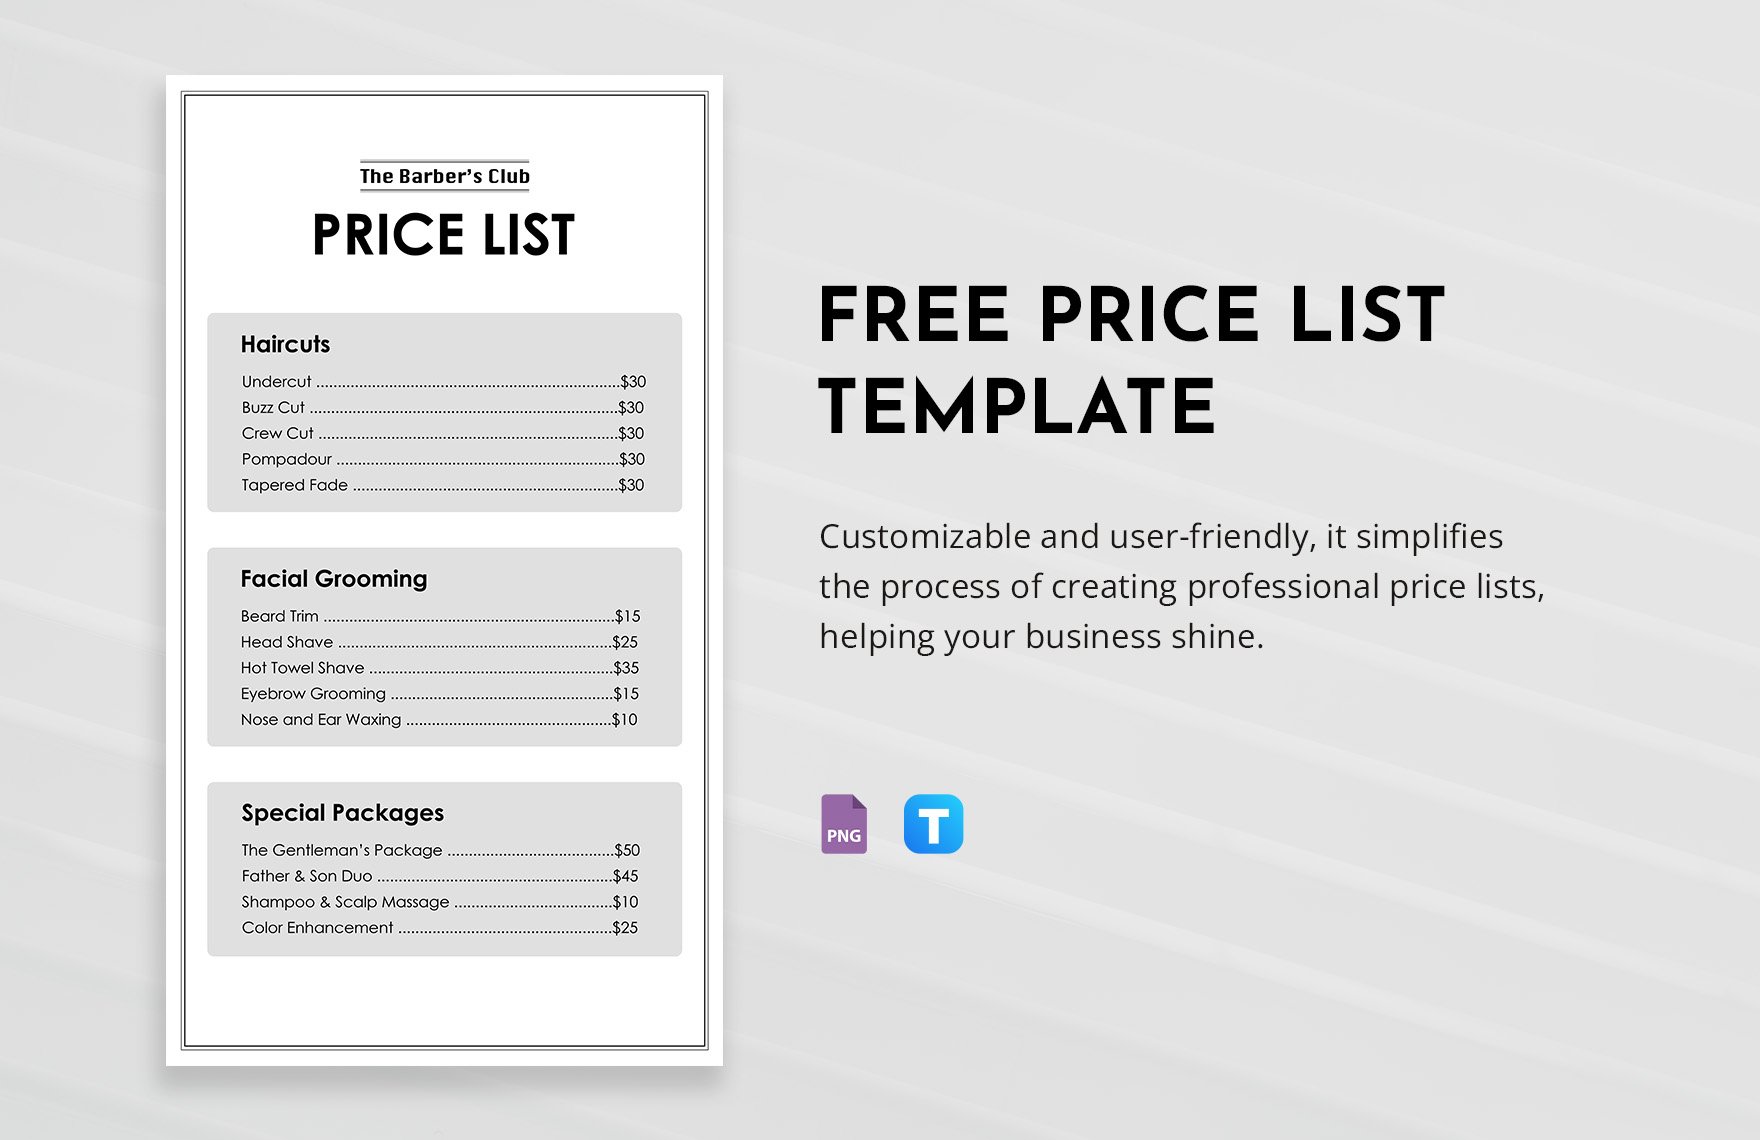 Tshirt PRICE LIST Template Editable. Printable Price Sheet 